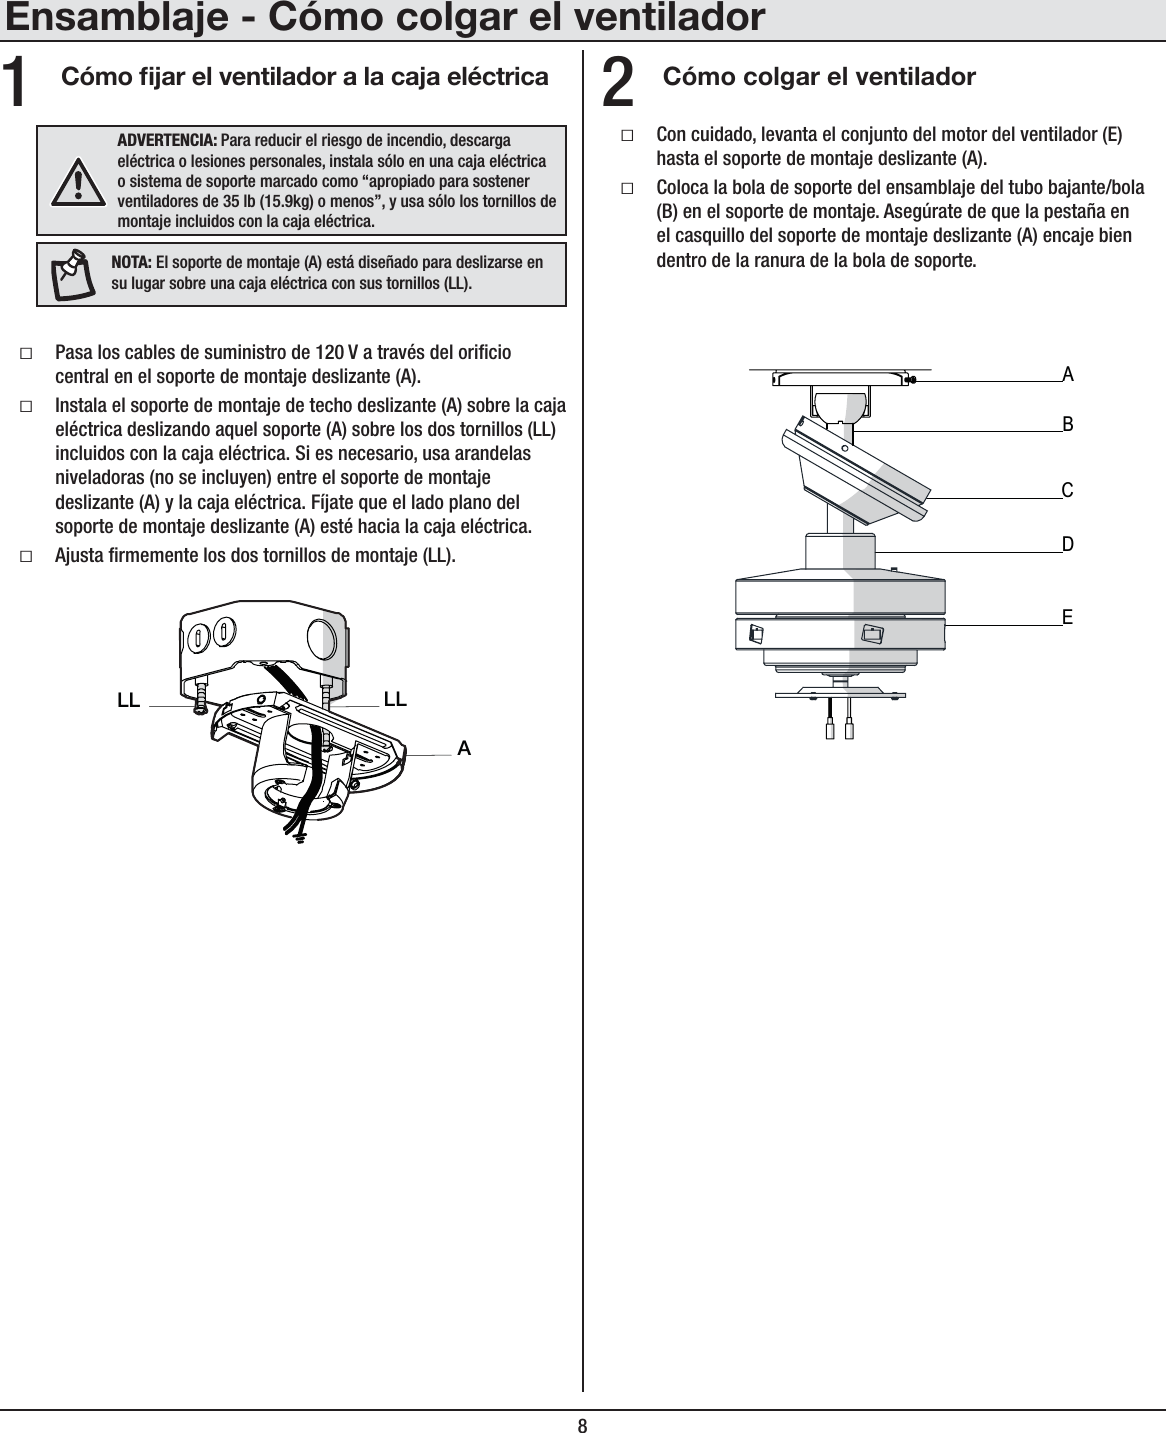 8Ensamblaje - Cómo colgar el ventiladorCómo jar el ventilador a la caja eléctrica Cómo colgar el ventiladorƑPasa los cables de suministro de 120 V a través del oricio central en el soporte de montaje deslizante (A).ƑInstala el soporte de montaje de techo deslizante (A) sobre la caja eléctrica deslizando aquel soporte (A) sobre los dos tornillos (LL) incluidos con la caja eléctrica. Si es necesario, usa arandelas niveladoras (no se incluyen) entre el soporte de montaje deslizante (A) y la caja eléctrica. Fíjate que el lado plano del soporte de montaje deslizante (A) esté hacia la caja eléctrica.ƑAjusta rmemente los dos tornillos de montaje (LL).ƑCon cuidado, levanta el conjunto del motor del ventilador (E) hasta el soporte de montaje deslizante (A).ƑColoca la bola de soporte del ensamblaje del tubo bajante/bola (B) en el soporte de montaje. Asegúrate de que la pestaña en el casquillo del soporte de montaje deslizante (A) encaje bien dentro de la ranura de la bola de soporte.12ADVERTENCIA: Para reducir el riesgo de incendio, descarga eléctrica o lesiones personales, instala sólo en una caja eléctrica o sistema de soporte marcado como “apropiado para sostener ventiladores de 35 lb (15.9kg) o menos”, y usa sólo los tornillos de montaje incluidos con la caja eléctrica.ALLLLNOTA: El soporte de montaje (A) está diseñado para deslizarse en su lugar sobre una caja eléctrica con sus tornillos (LL).ABCDE